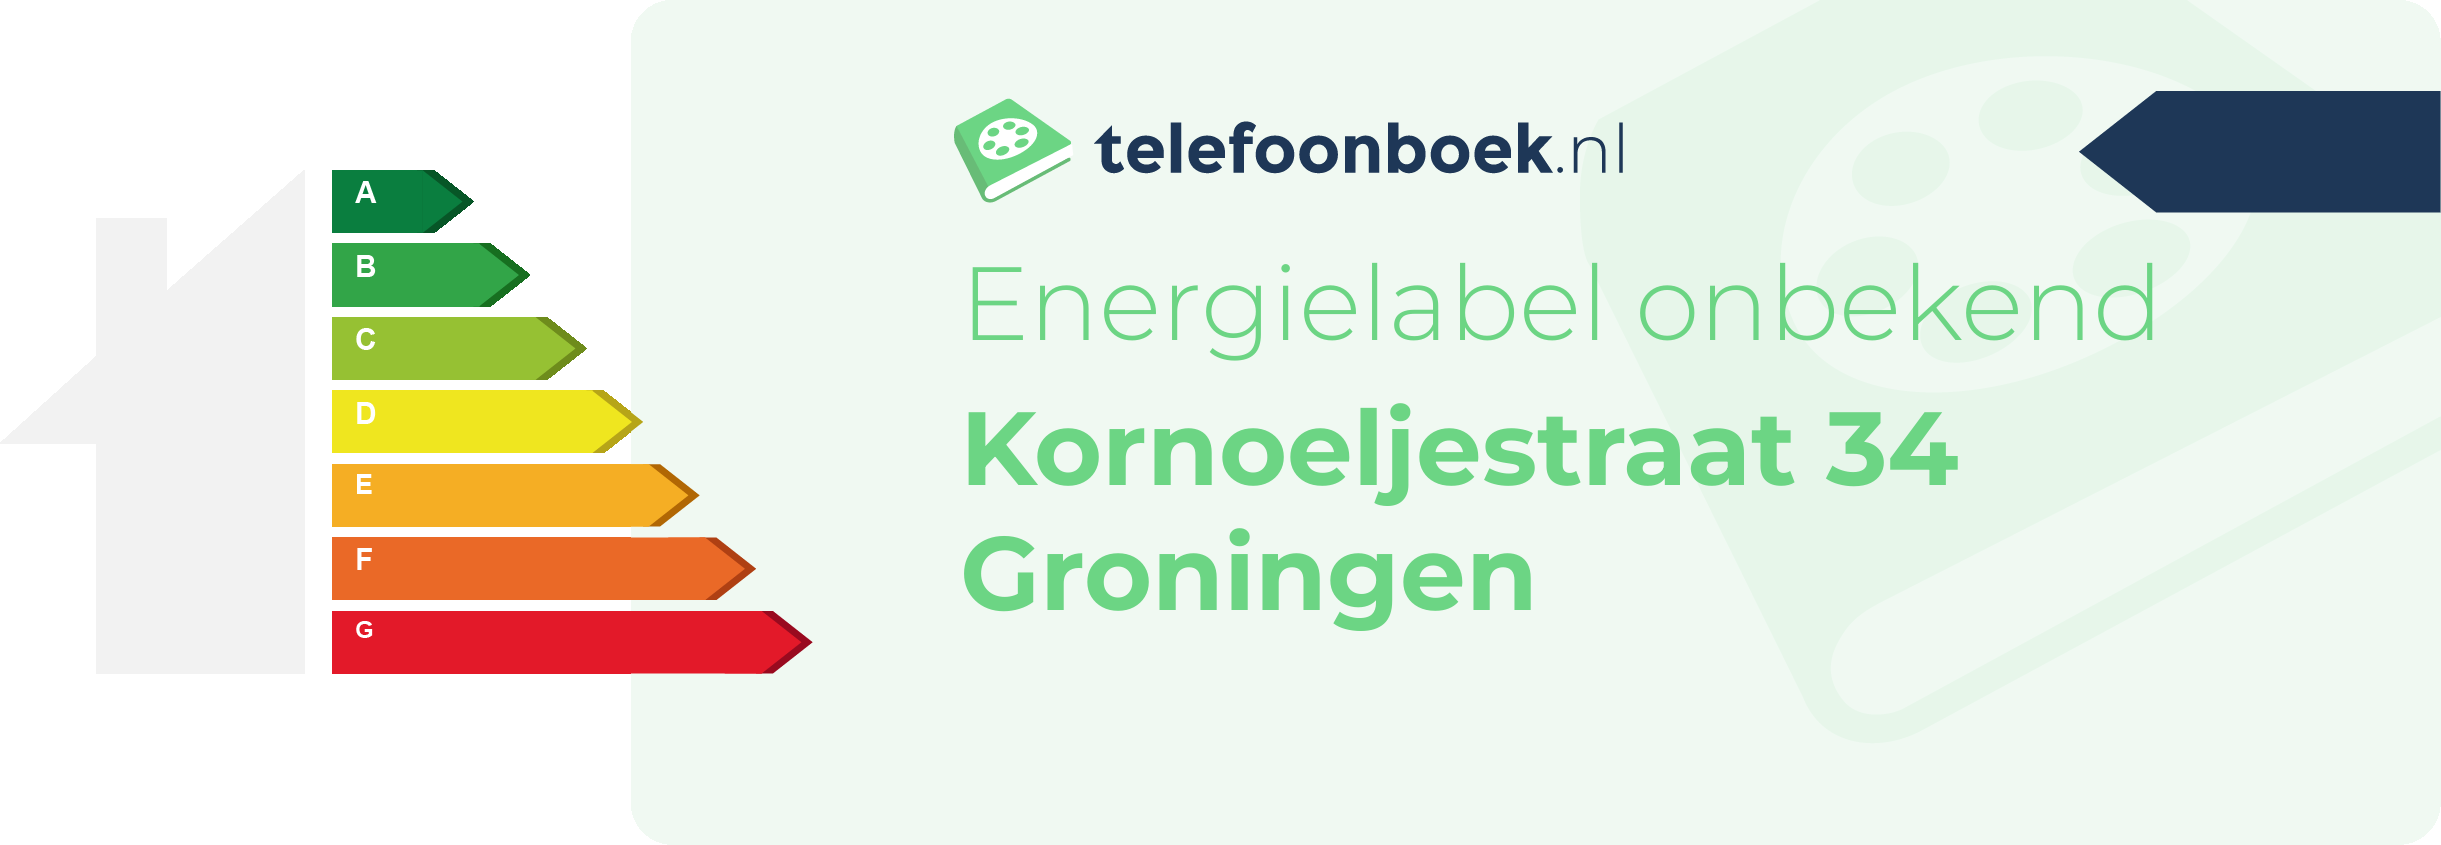 Energielabel Kornoeljestraat 34 Groningen